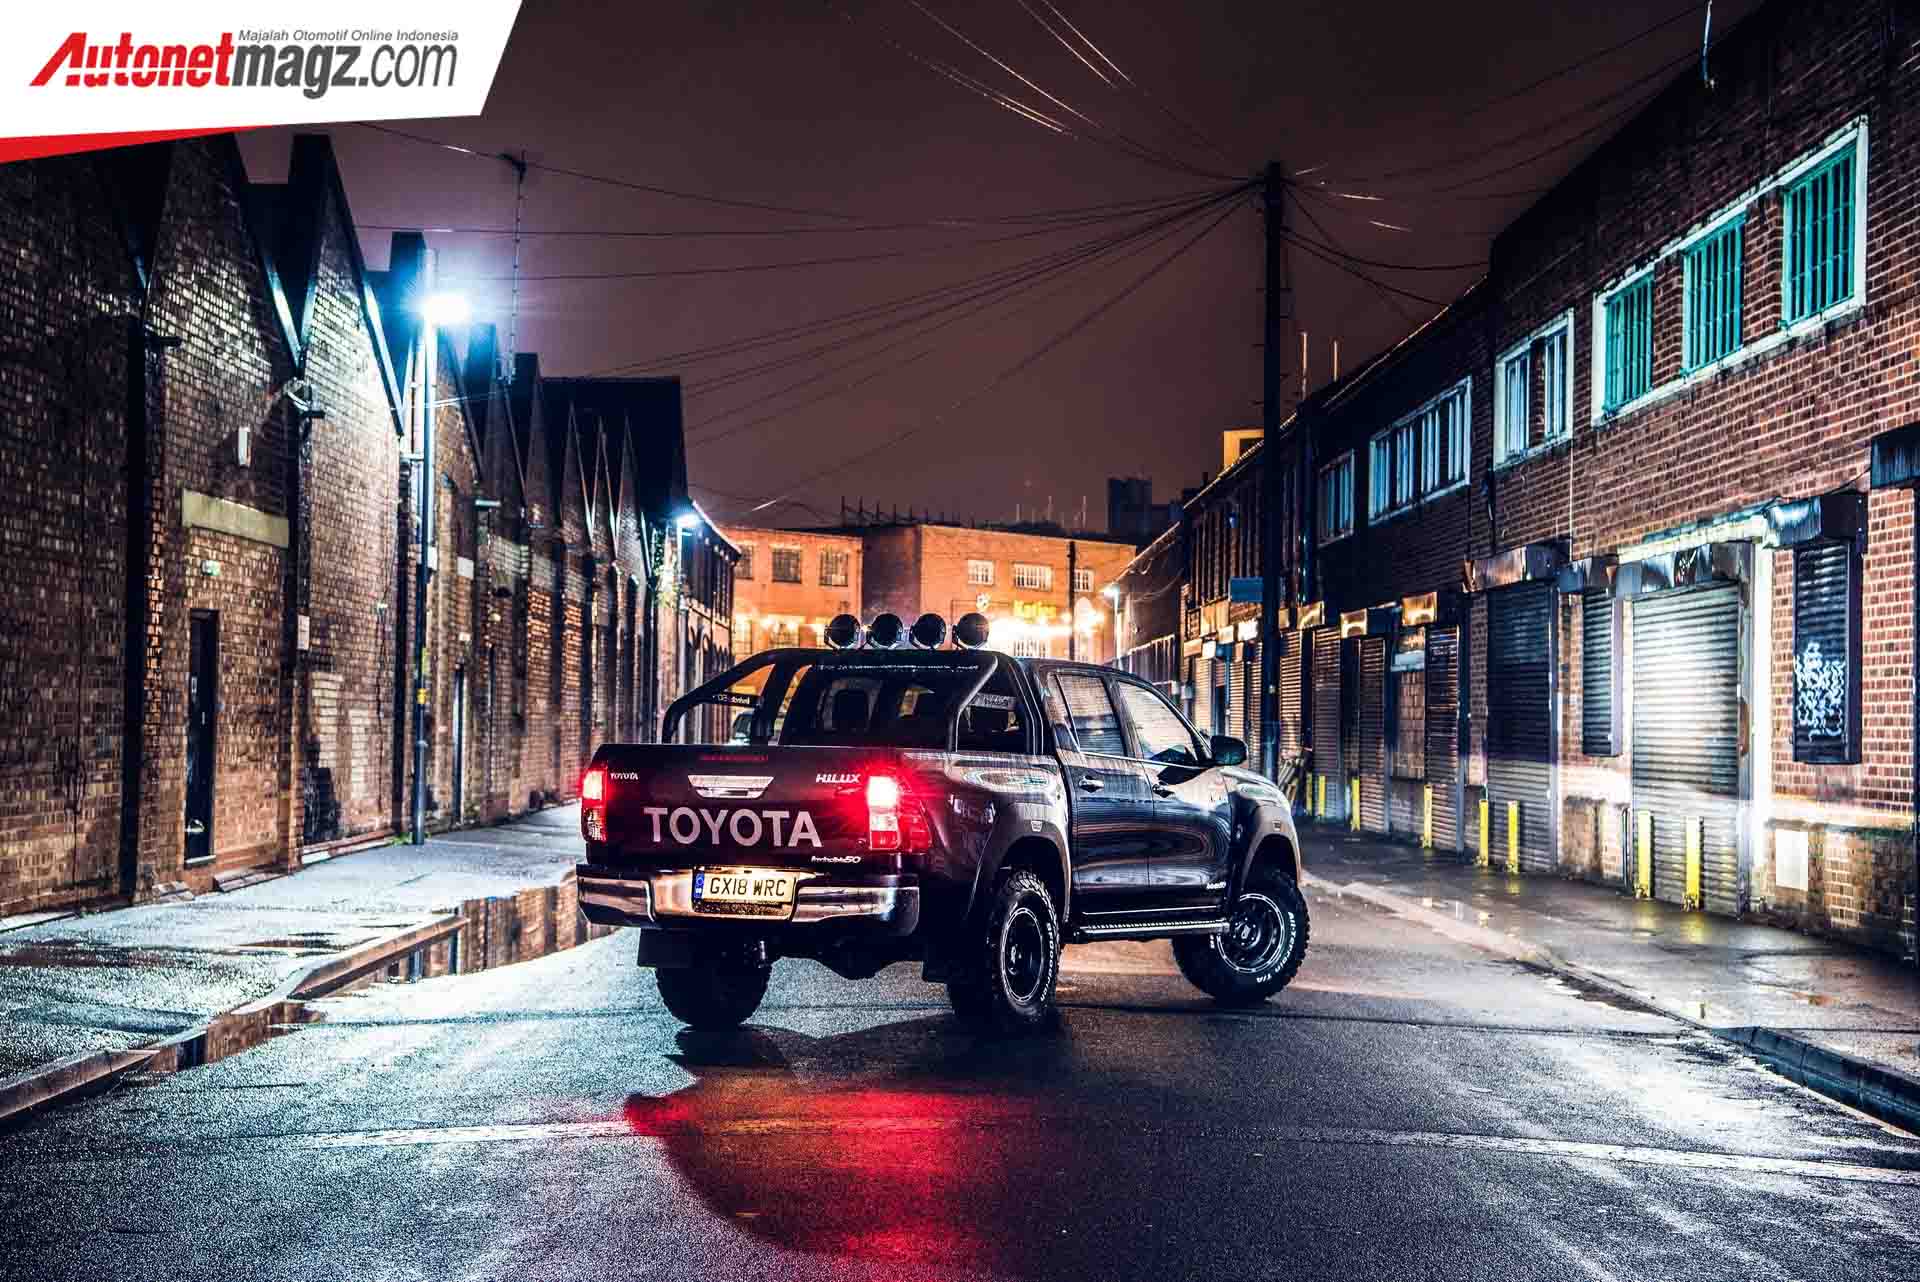 Berita, Toyota Hilux Invincible 50 belakang: Ulang Tahun Hilux Ke-50, Versi Limited Edition Hadir Di Inggris